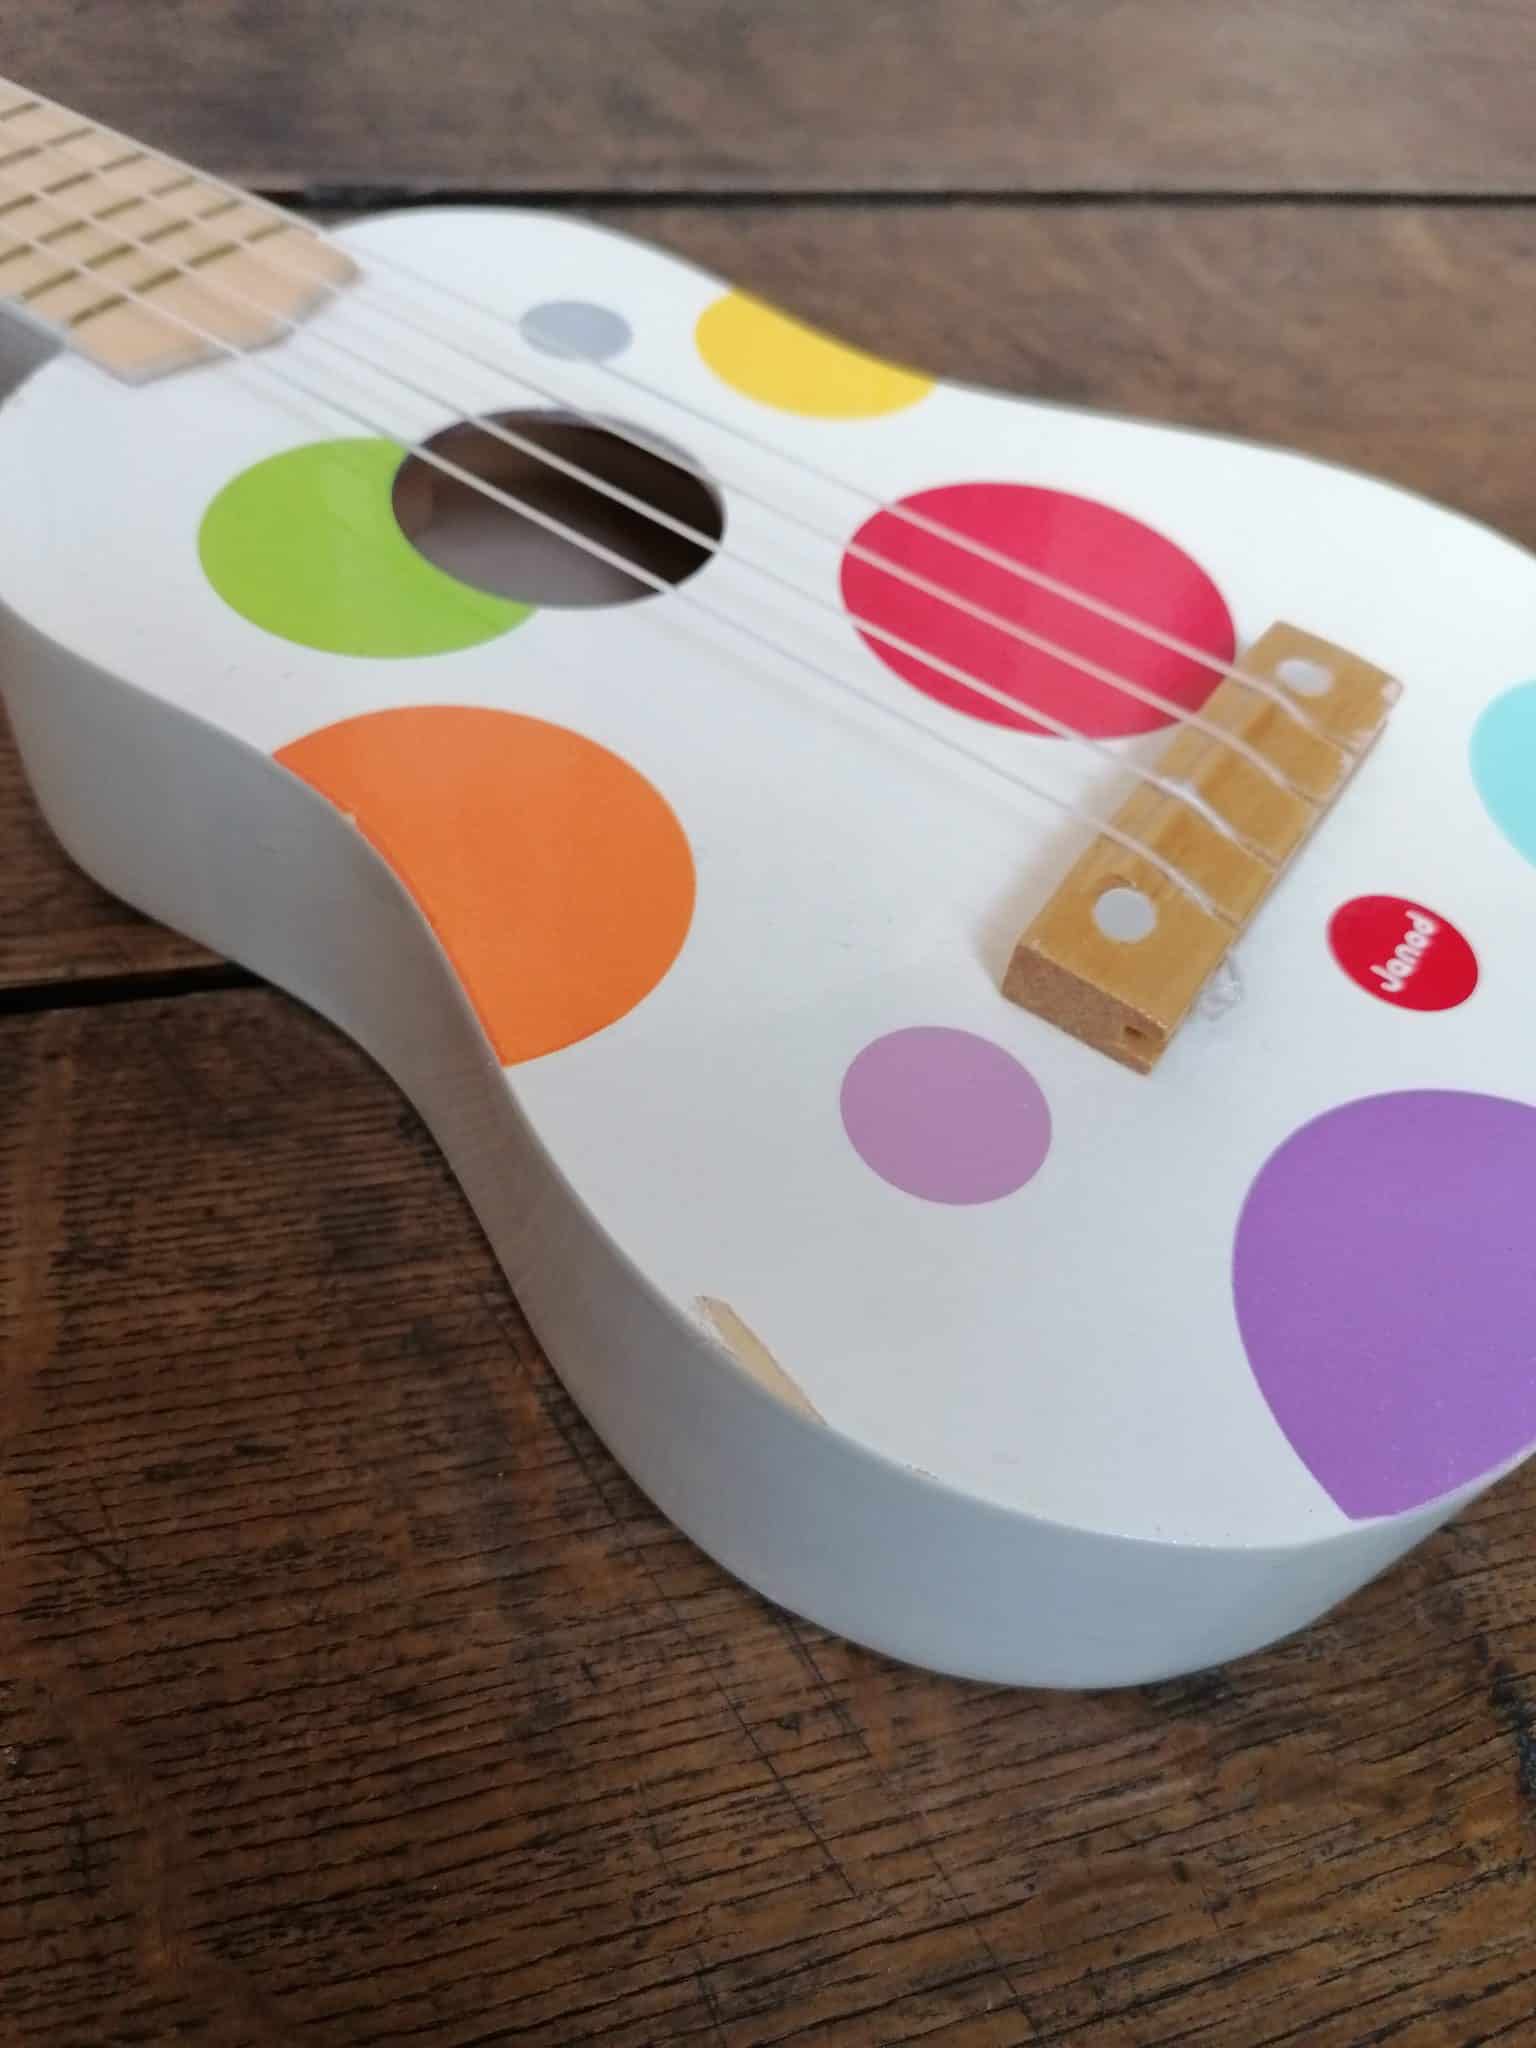 Guitare 4 cordes : Youkoulélé en bois Confetti